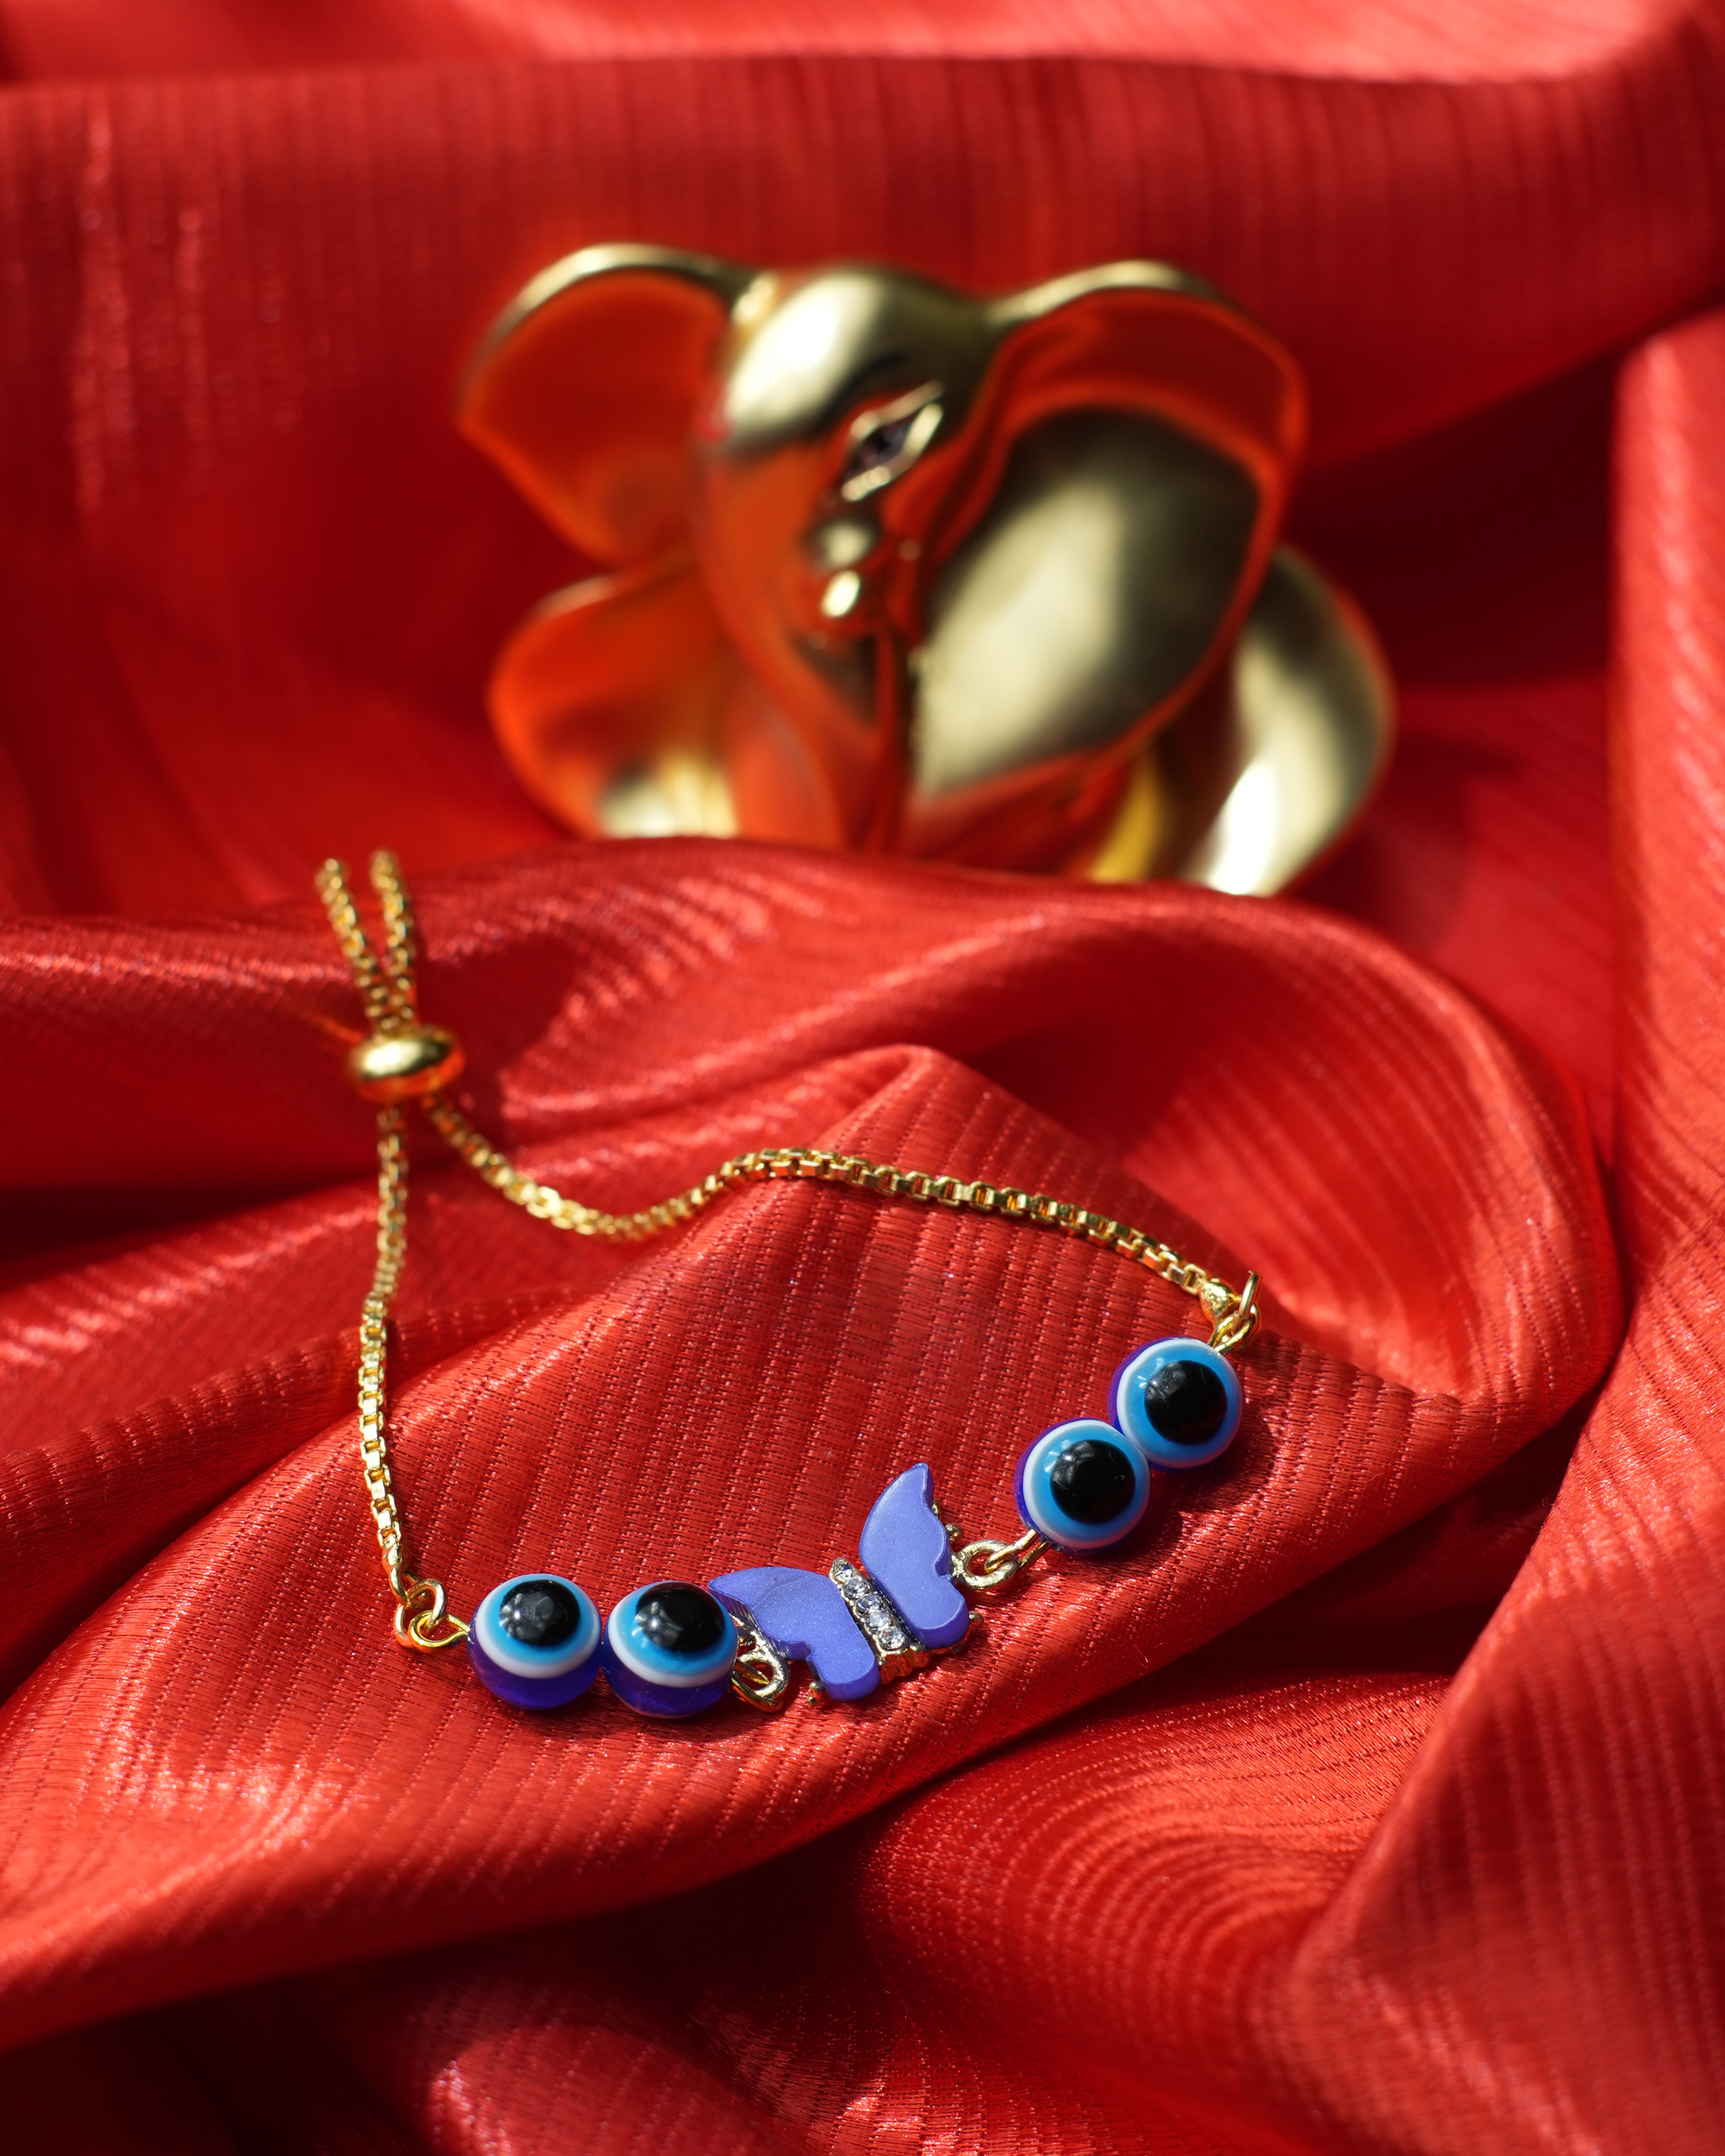 tatva-bracelet-|-golden-bracelet-with-evil-eye-beads-and-flower-evil-eye-charm